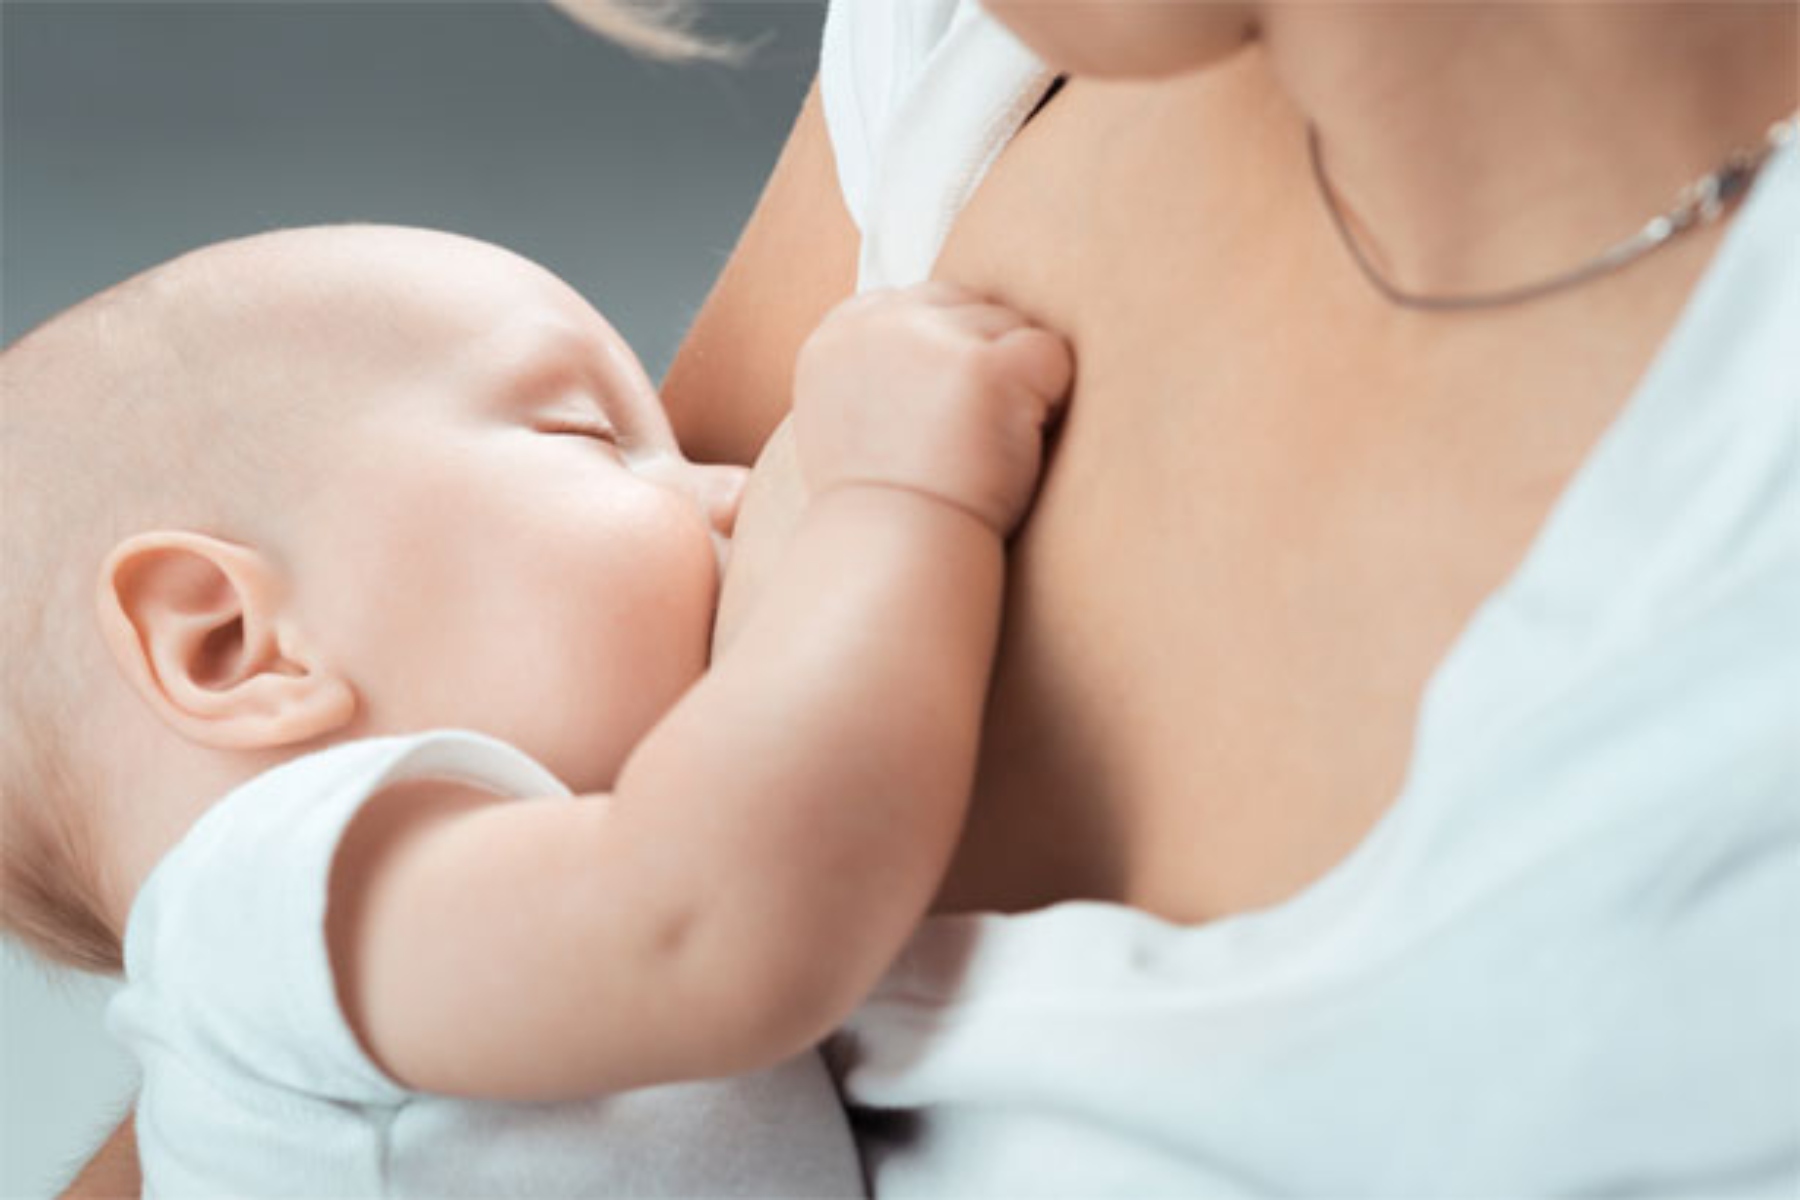 Βρεφική ανάπτυξη: Μόριο ζάχαρης στο μητρικό γάλα ενισχύει την ανάπτυξη του εγκεφάλου